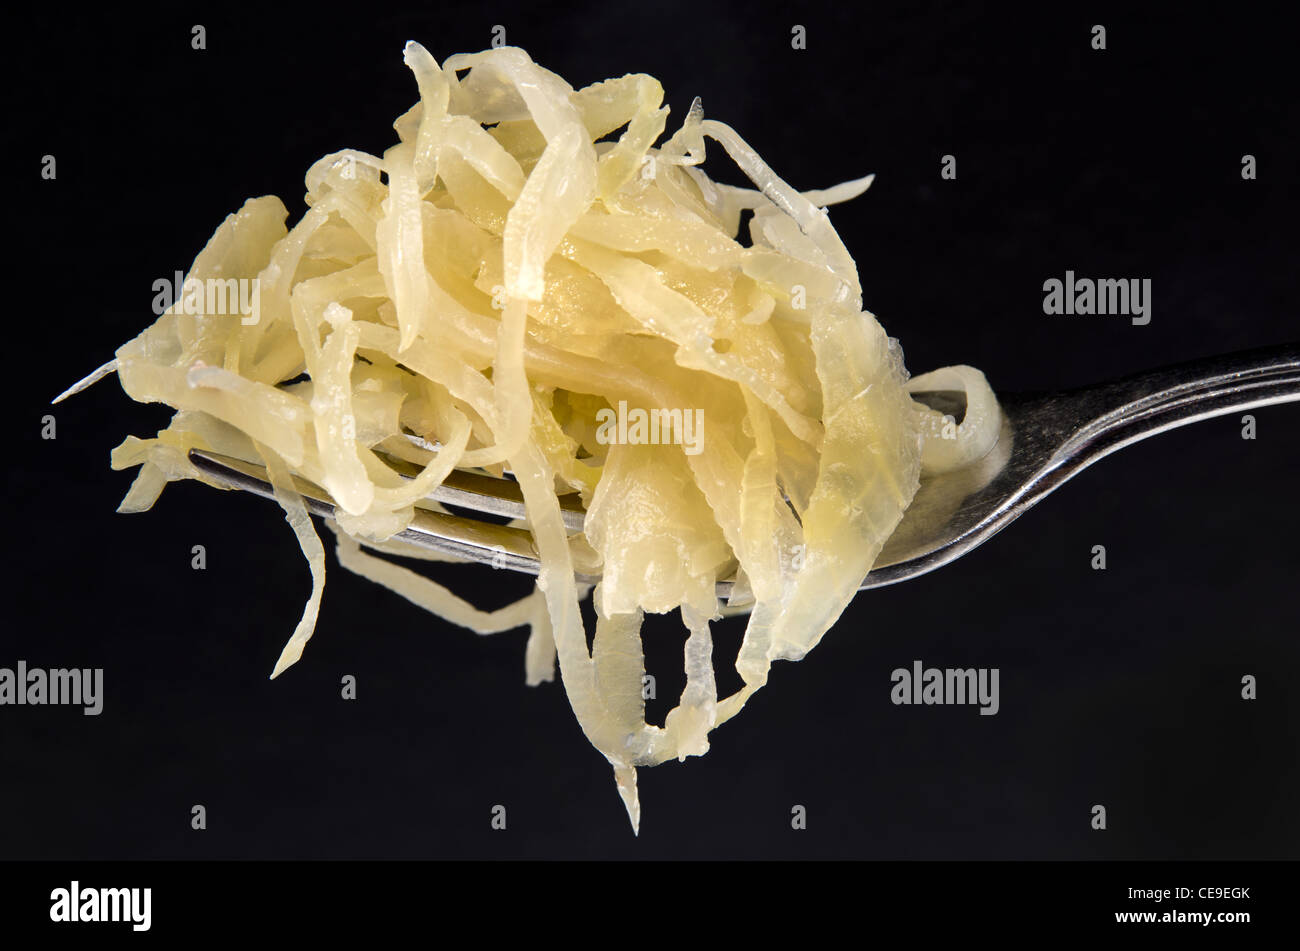 Sauerkraut on a fork Stock Photo